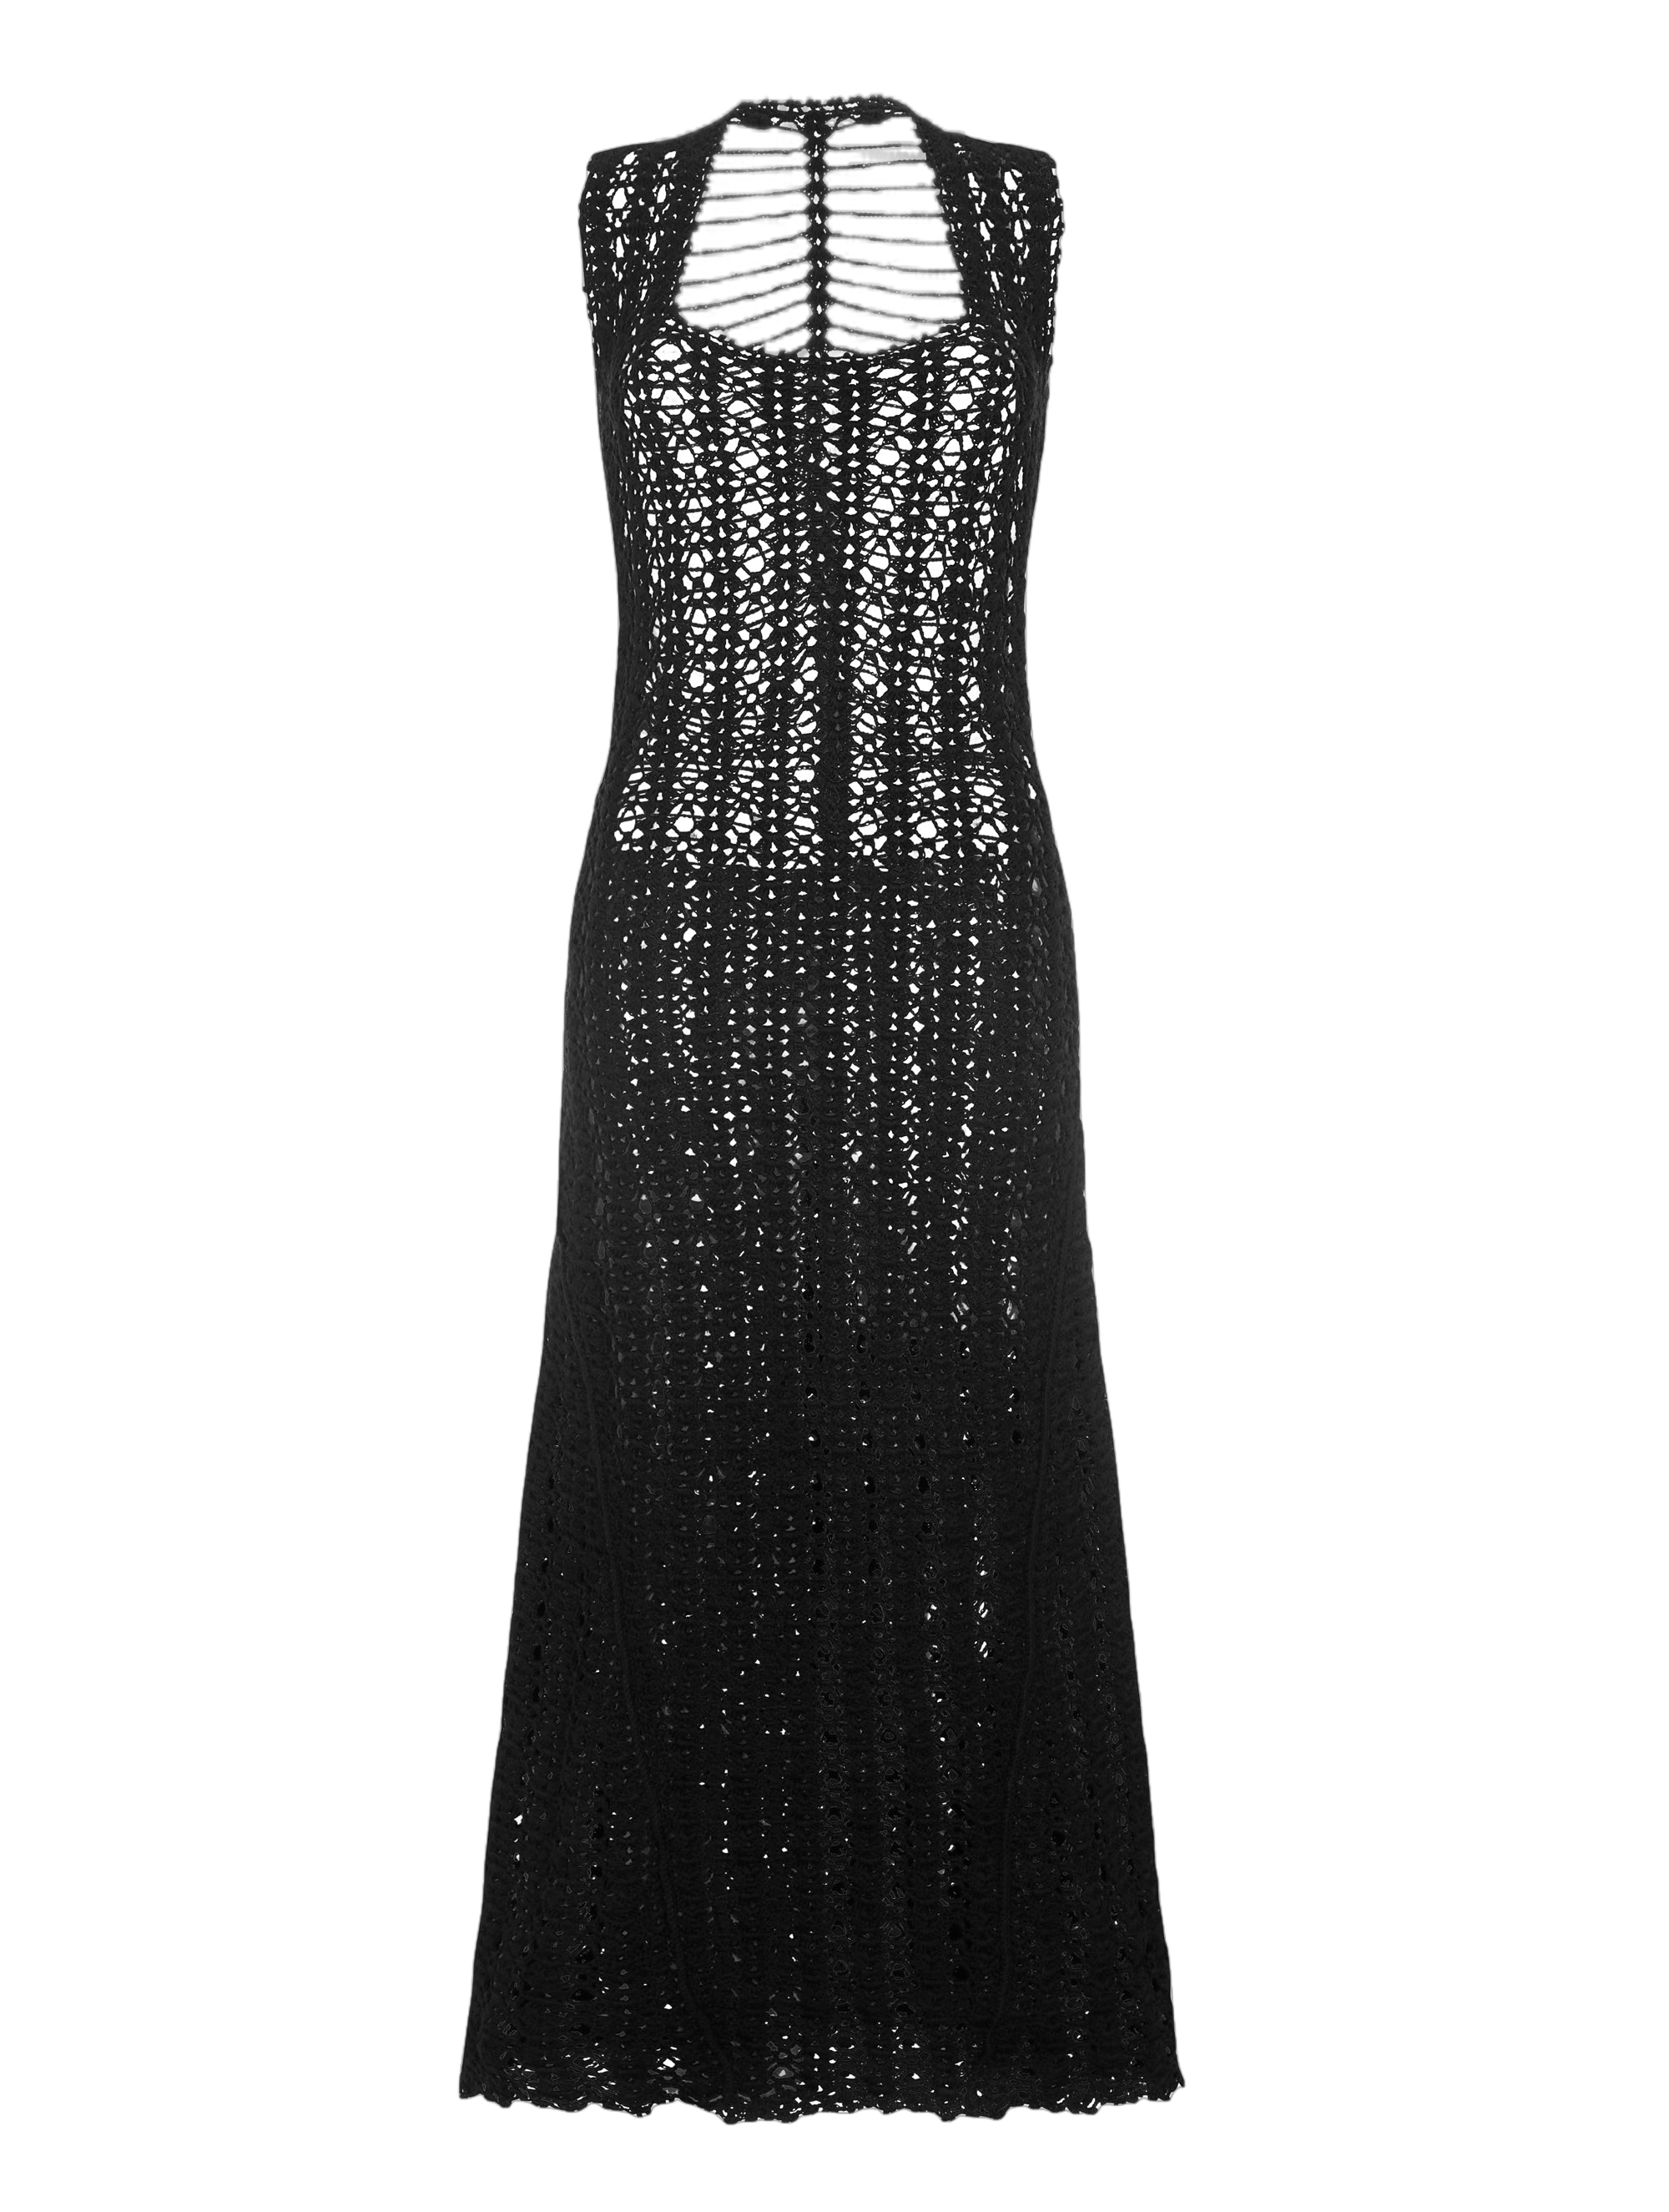 Peregrina Espina Dorsal Dress Black